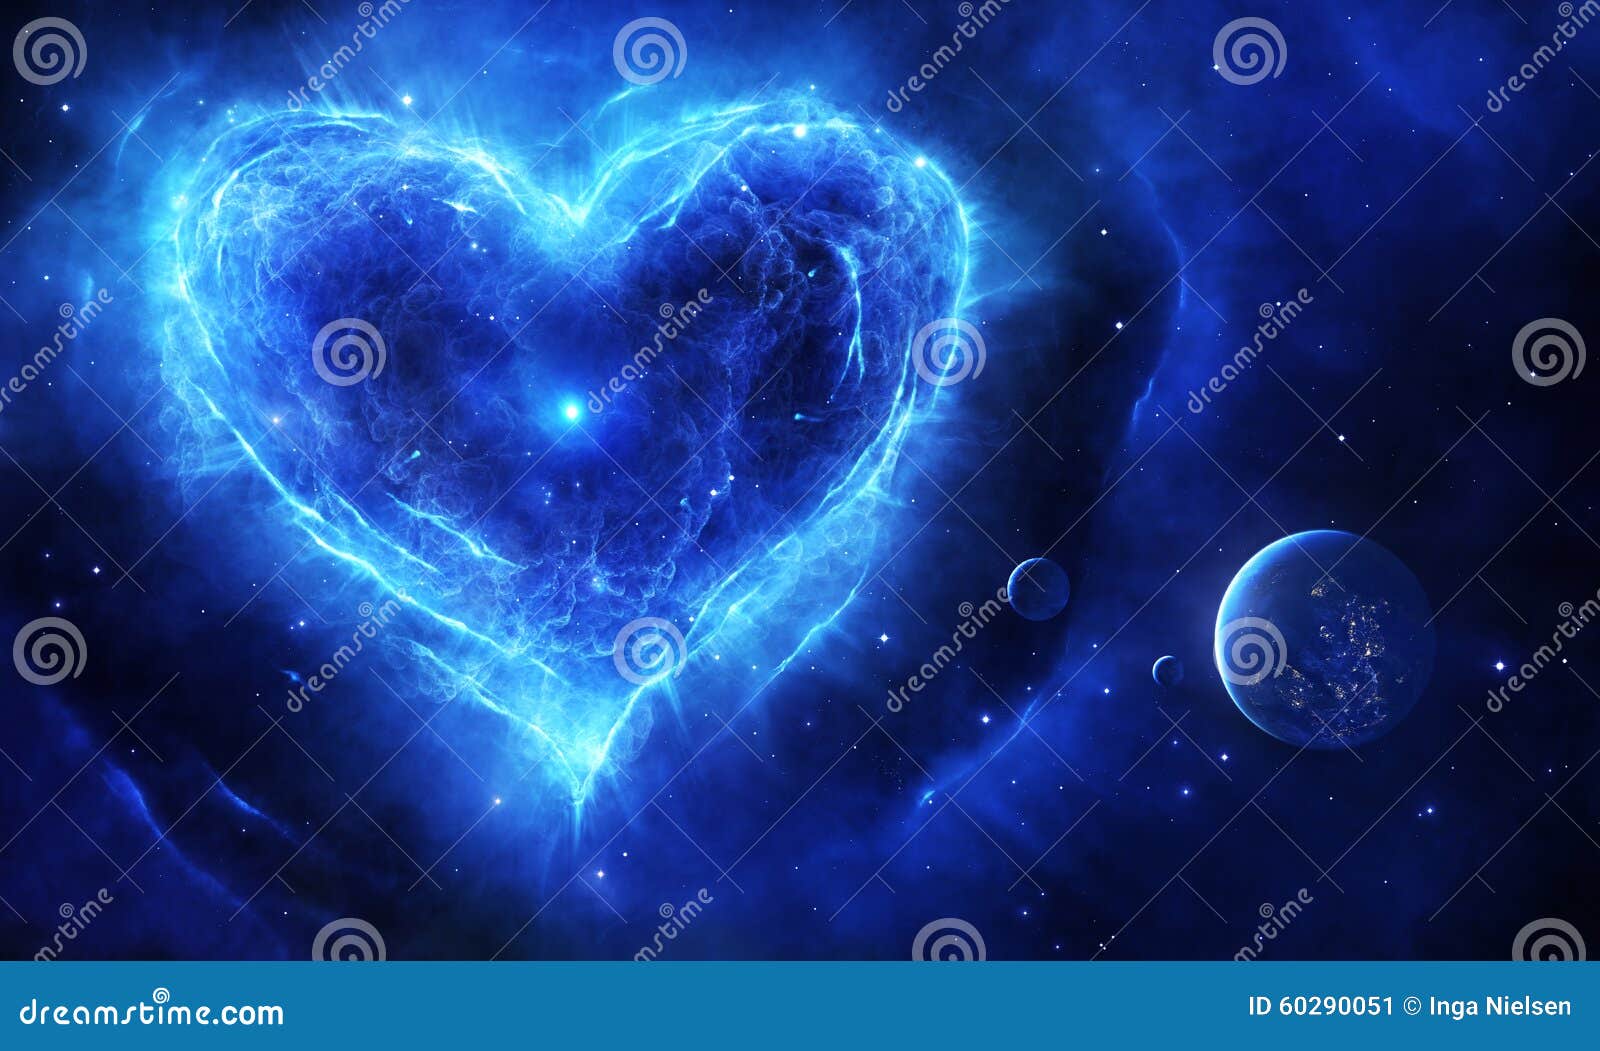 blue supernova heart